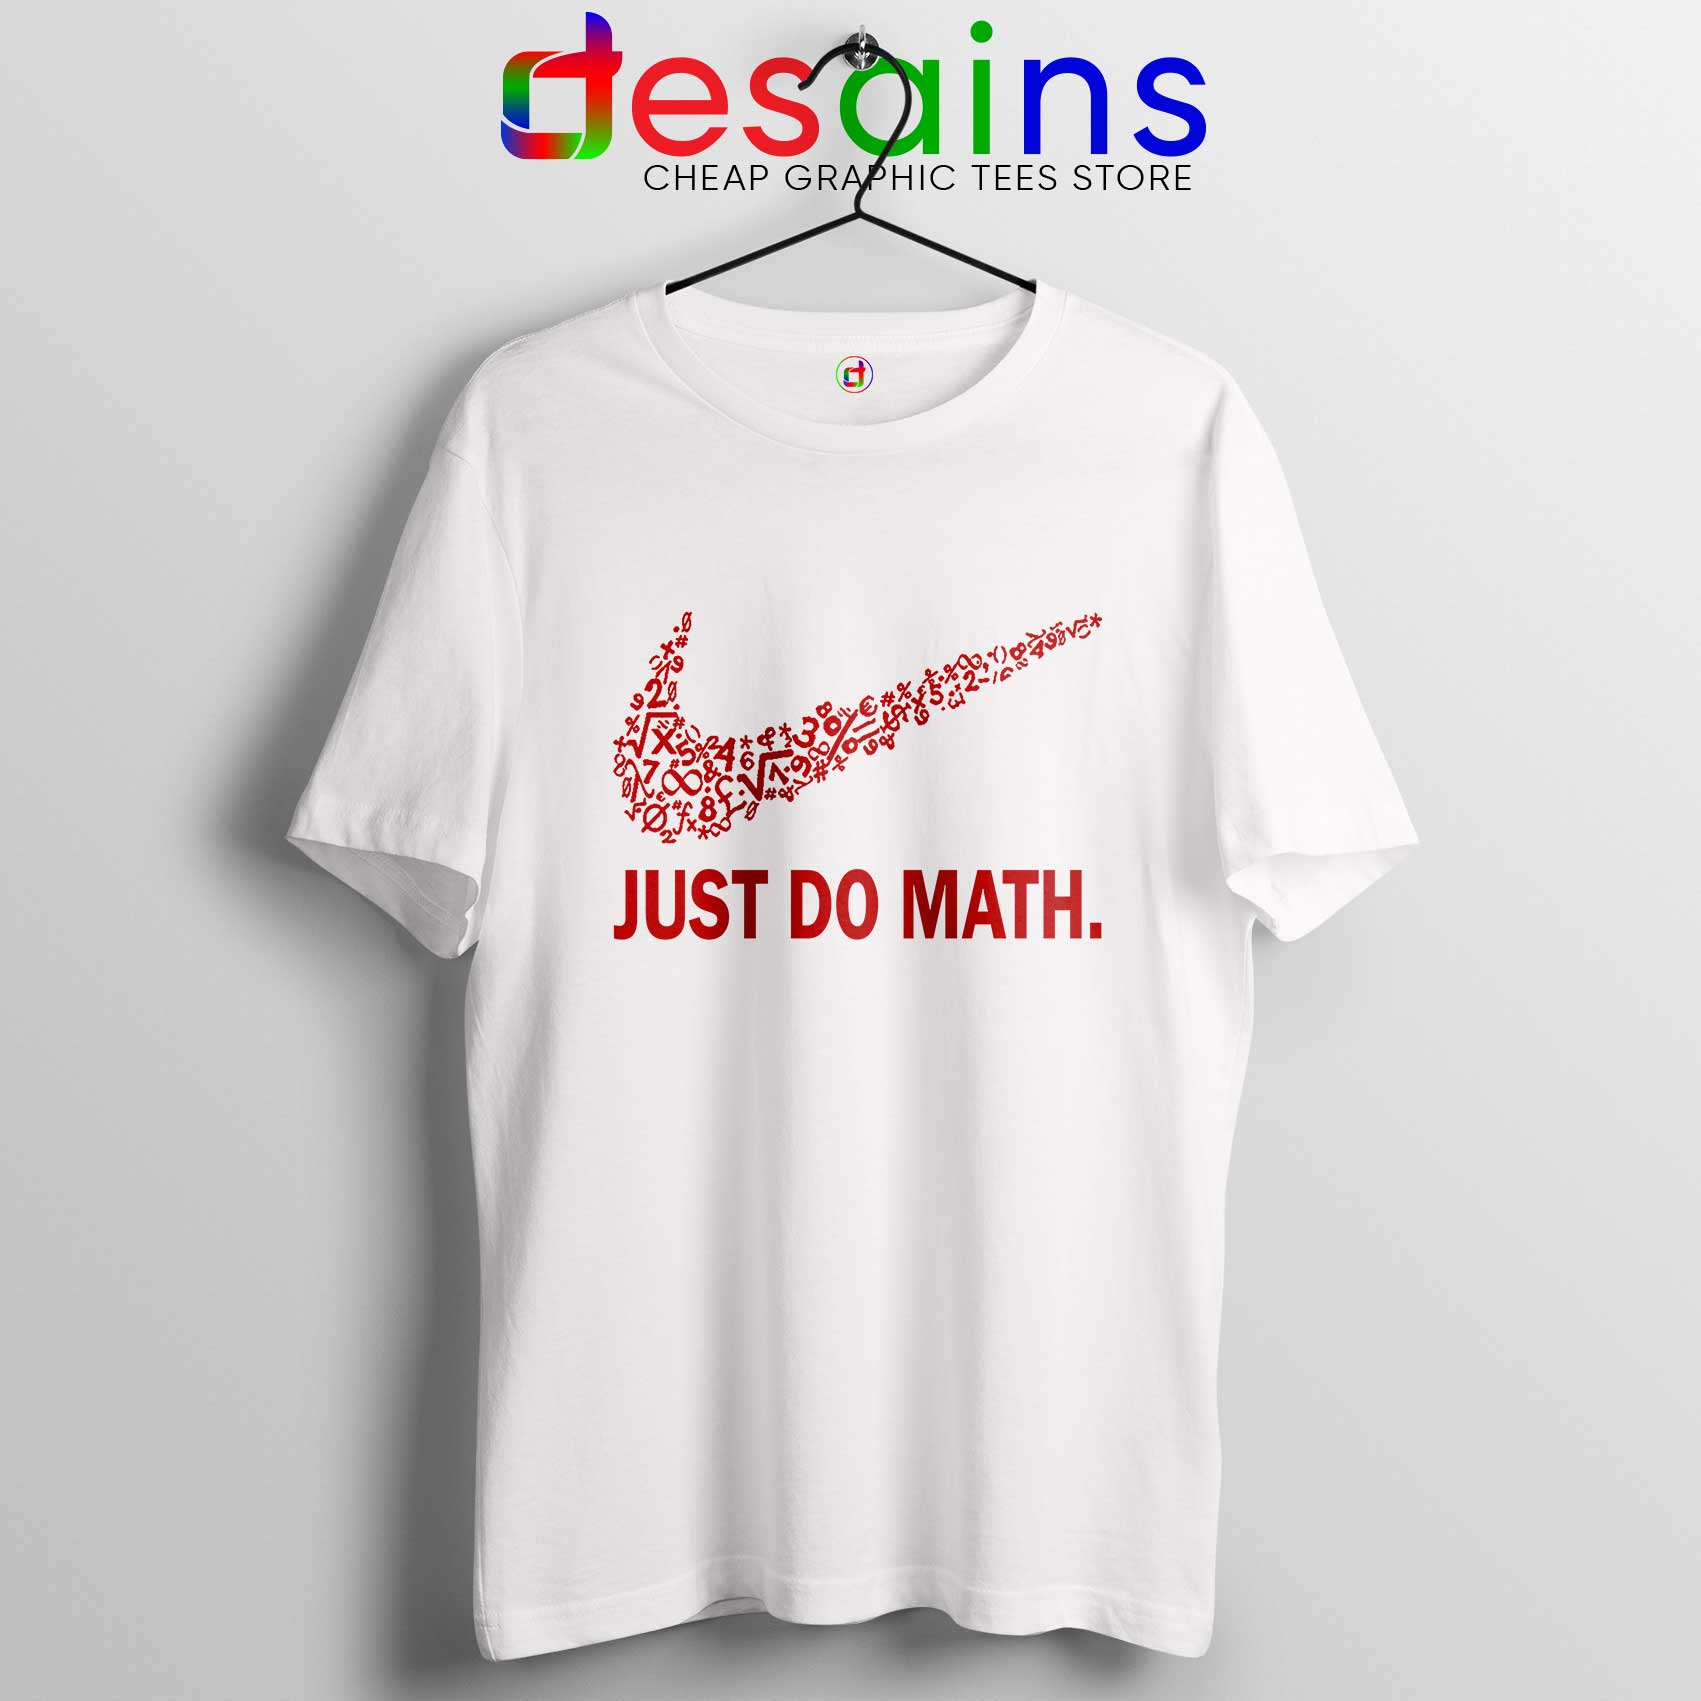 just do it t shirt design